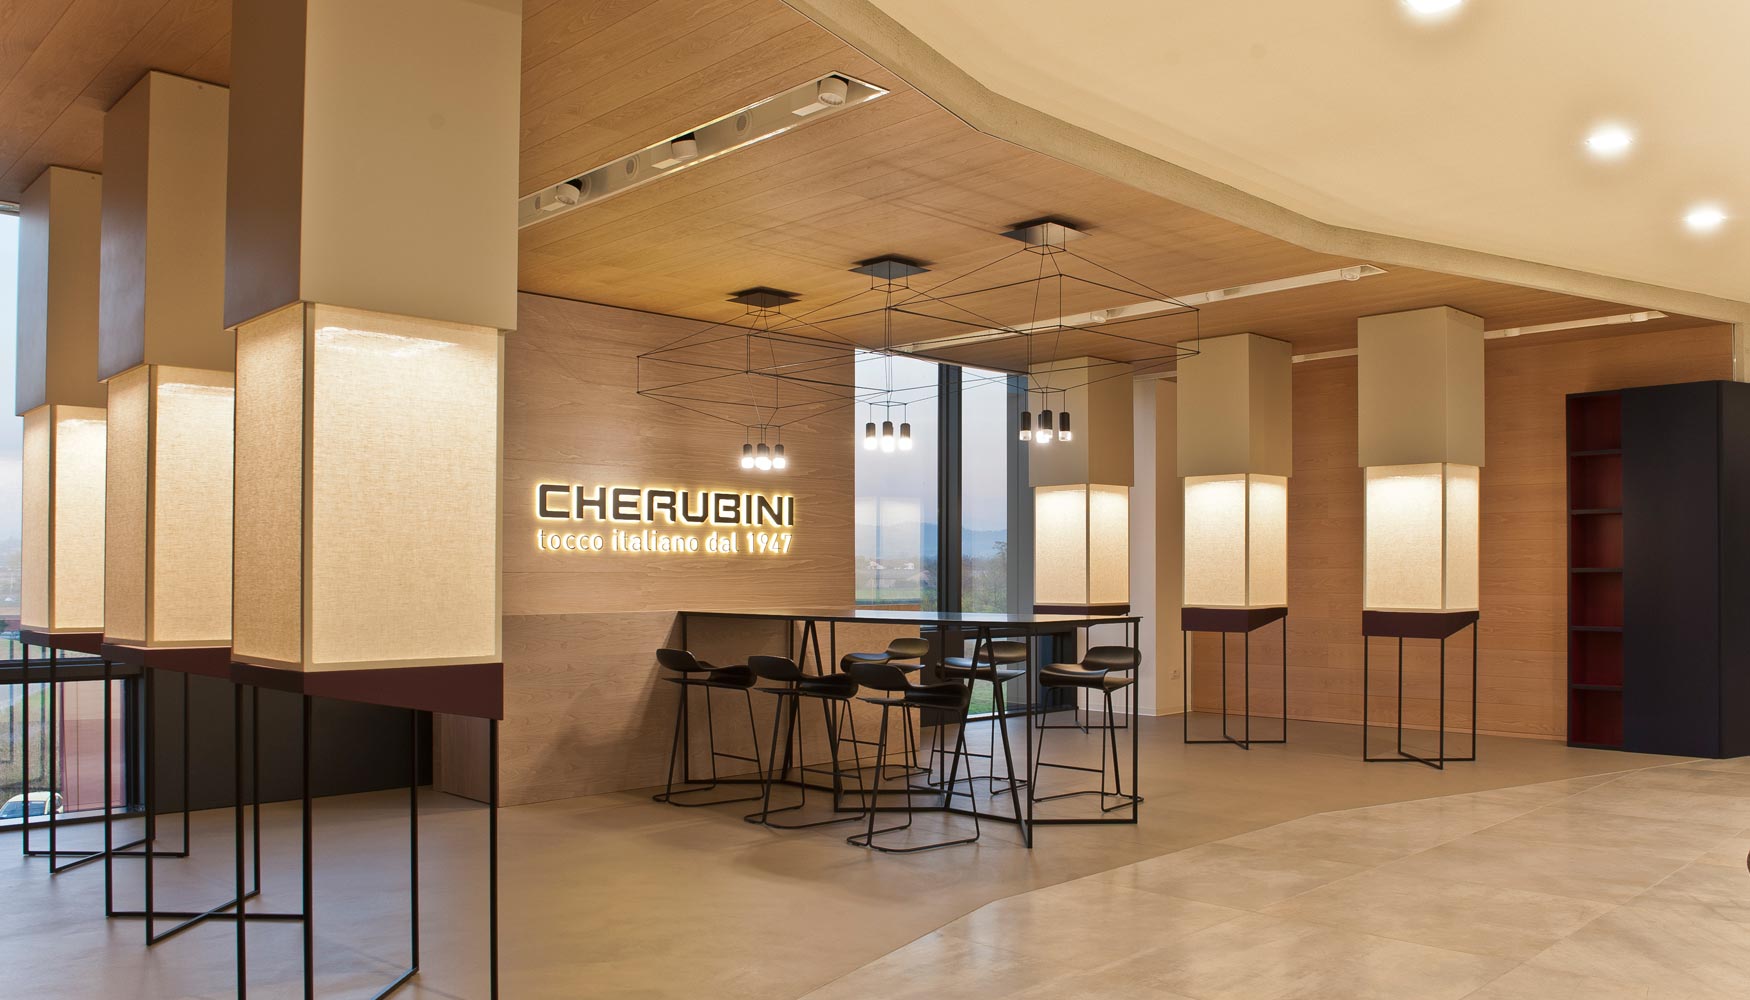 Showroom de Cherubini, con sus innovadores motorizaciones para persianas